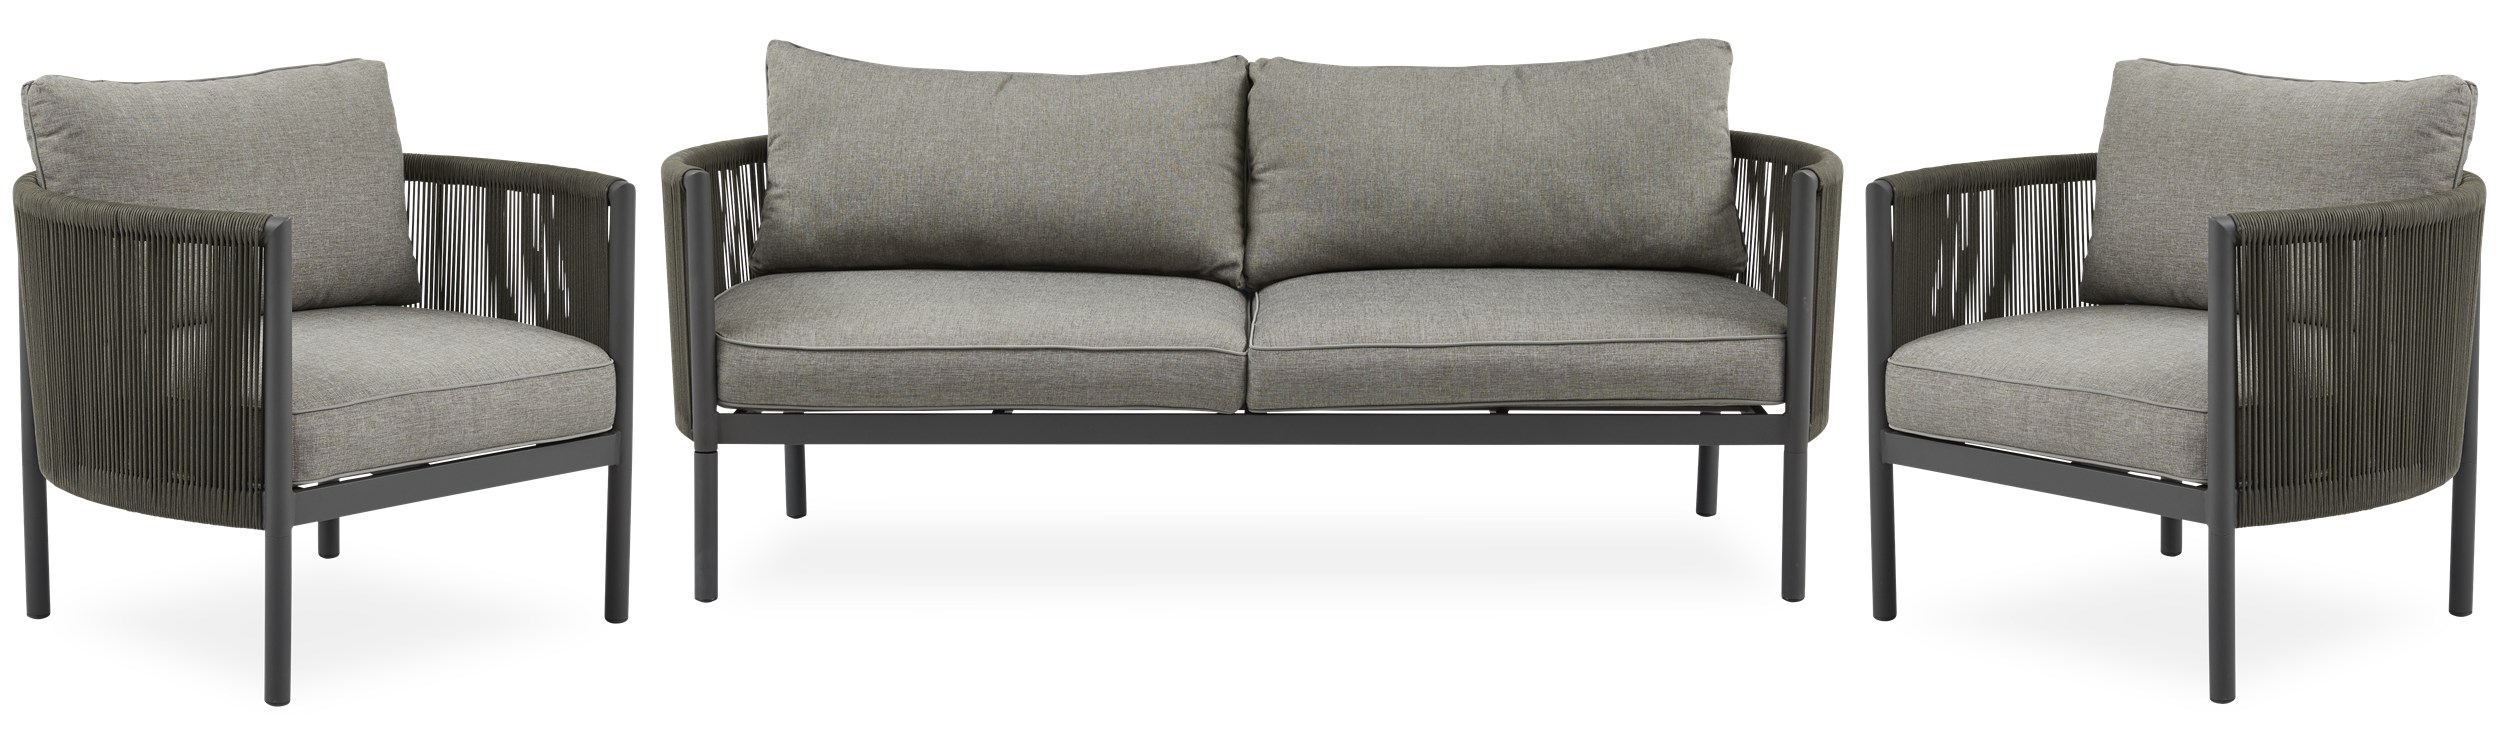 Nerissa Loungeset med 1 soffa + 1 stolar gråbrun